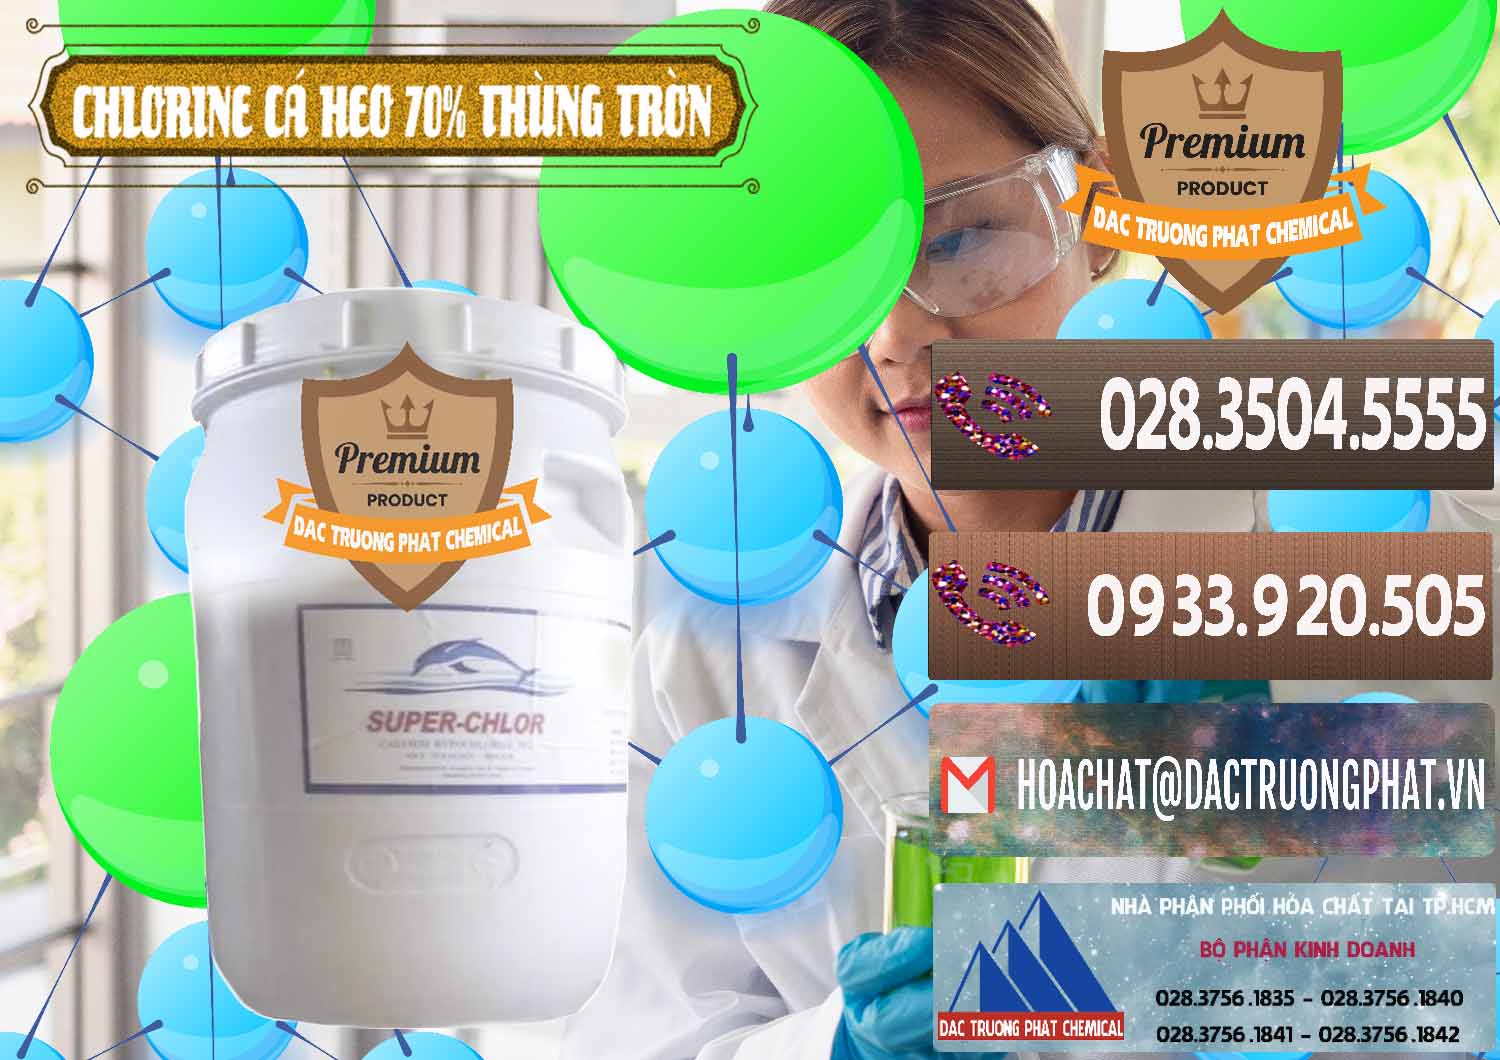 Công ty bán & phân phối Clorin - Chlorine Cá Heo 70% Super Chlor Thùng Tròn Nắp Trắng Trung Quốc China - 0239 - Chuyên cung cấp - kinh doanh hóa chất tại TP.HCM - hoachatviet.net